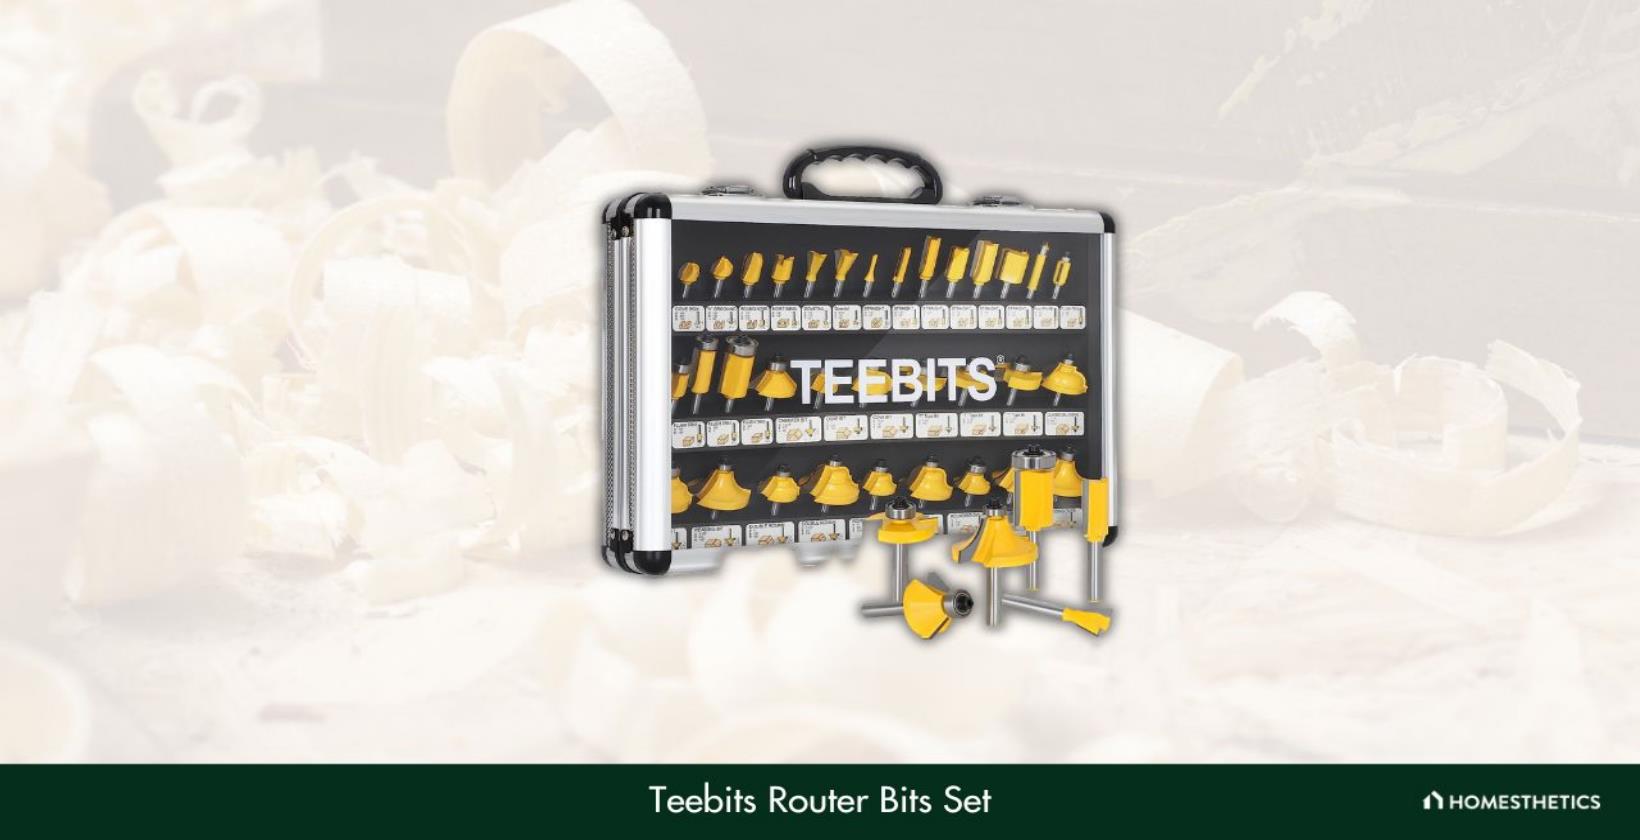 9. Teebits Router Bits Set